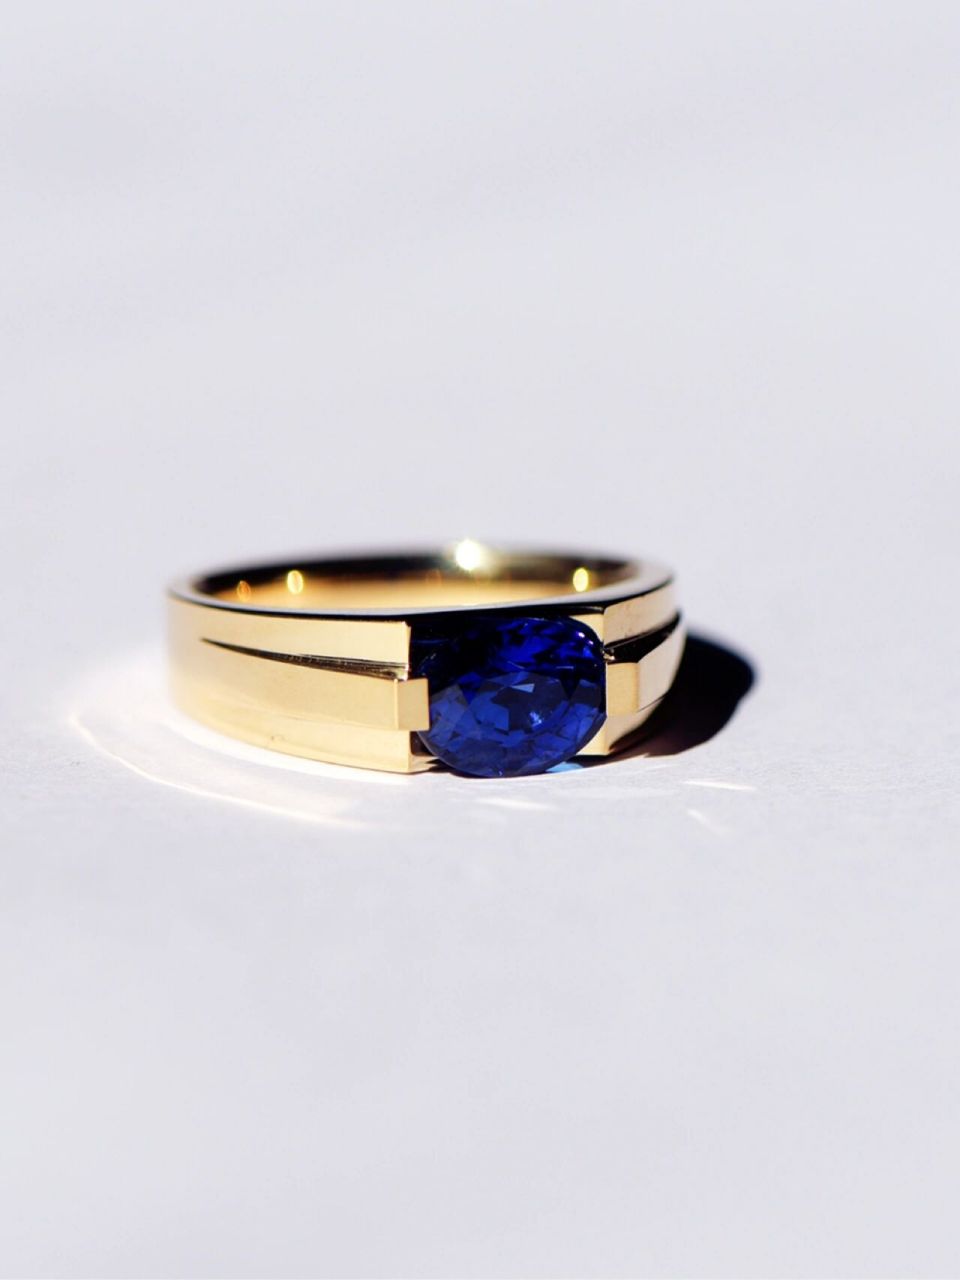 简洁优雅 专为男士设计的蓝宝石戒指,线条简洁明快, 优雅干练,不落